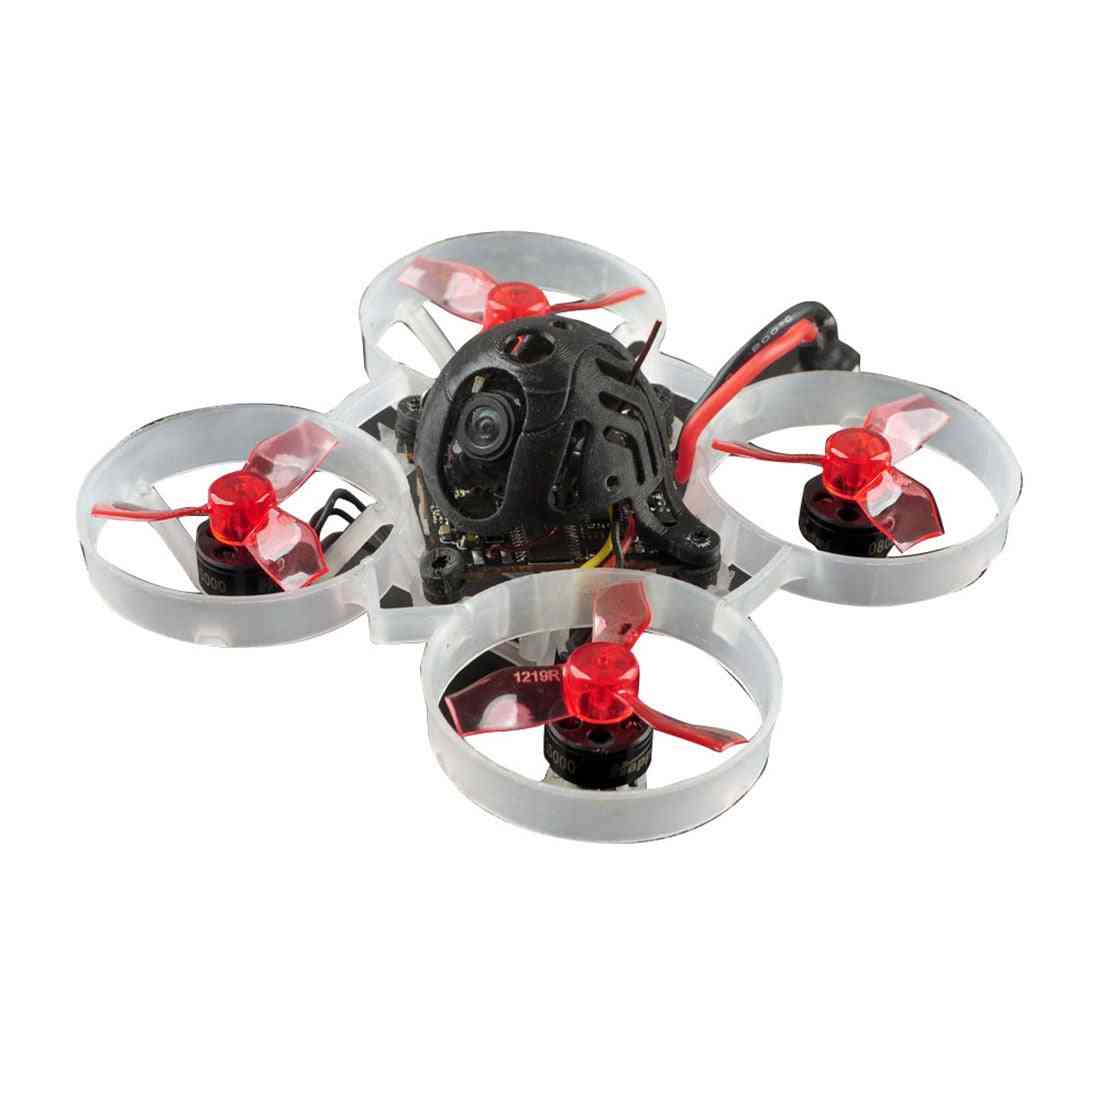 Drone de course avec 4 en 1 - facile à utiliser - 19000kv pour frsky